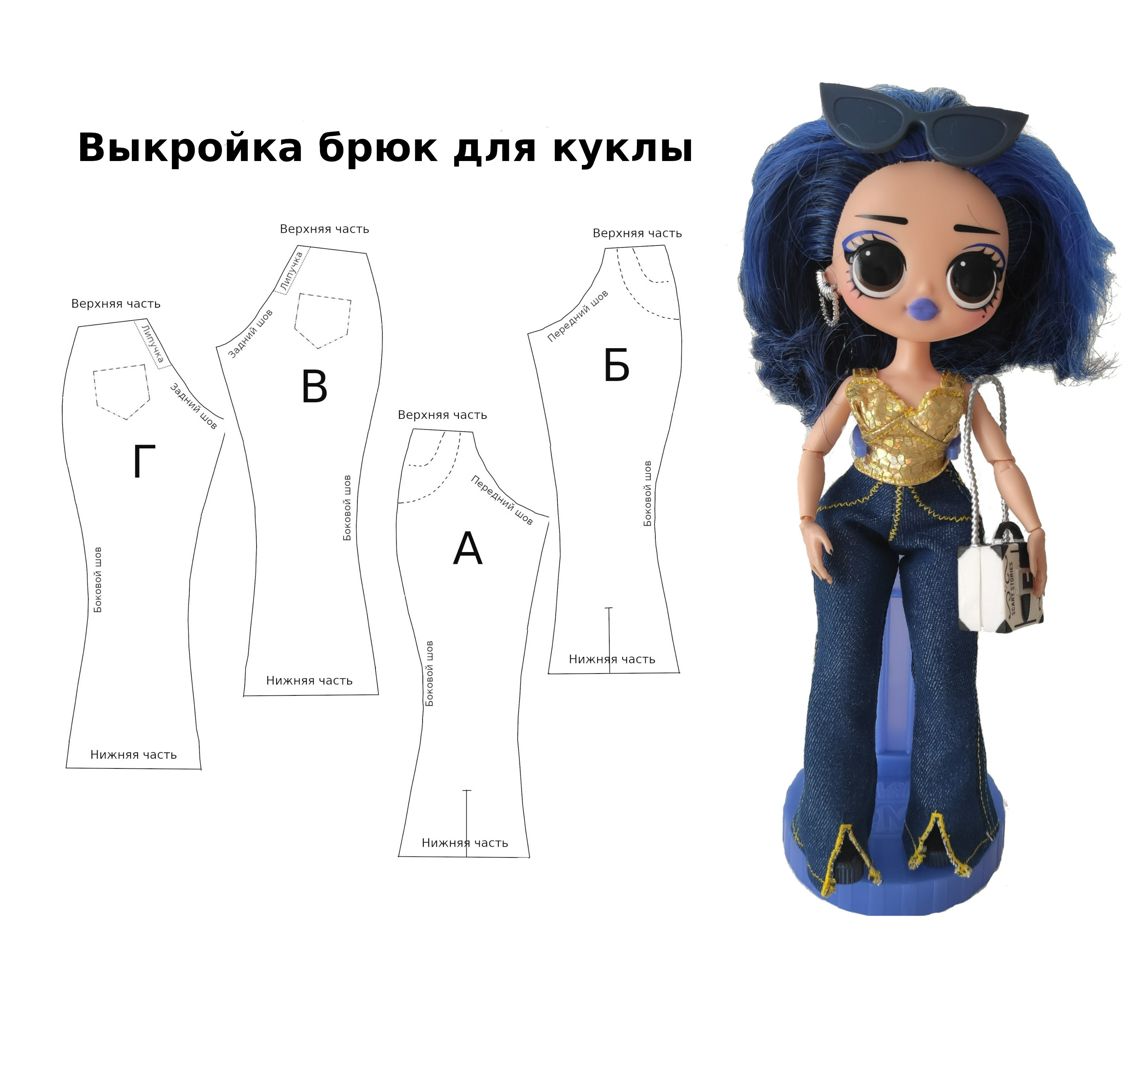 Одежда для кукол: выкройки для кукол Qbaby